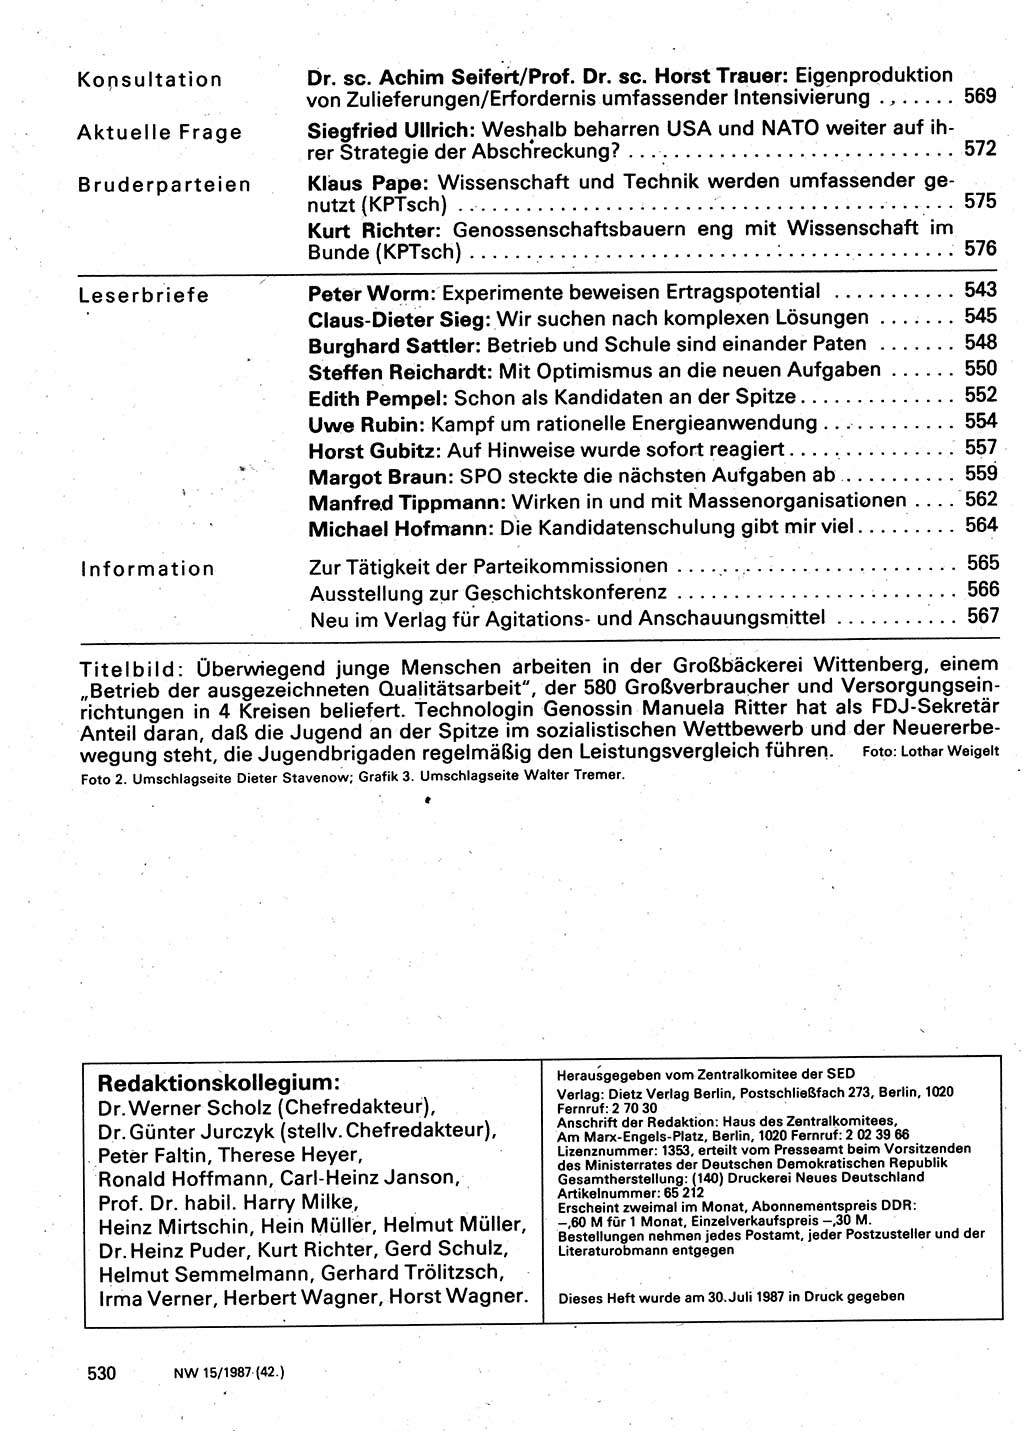 Neuer Weg (NW), Organ des Zentralkomitees (ZK) der SED (Sozialistische Einheitspartei Deutschlands) für Fragen des Parteilebens, 42. Jahrgang [Deutsche Demokratische Republik (DDR)] 1987, Seite 530 (NW ZK SED DDR 1987, S. 530)